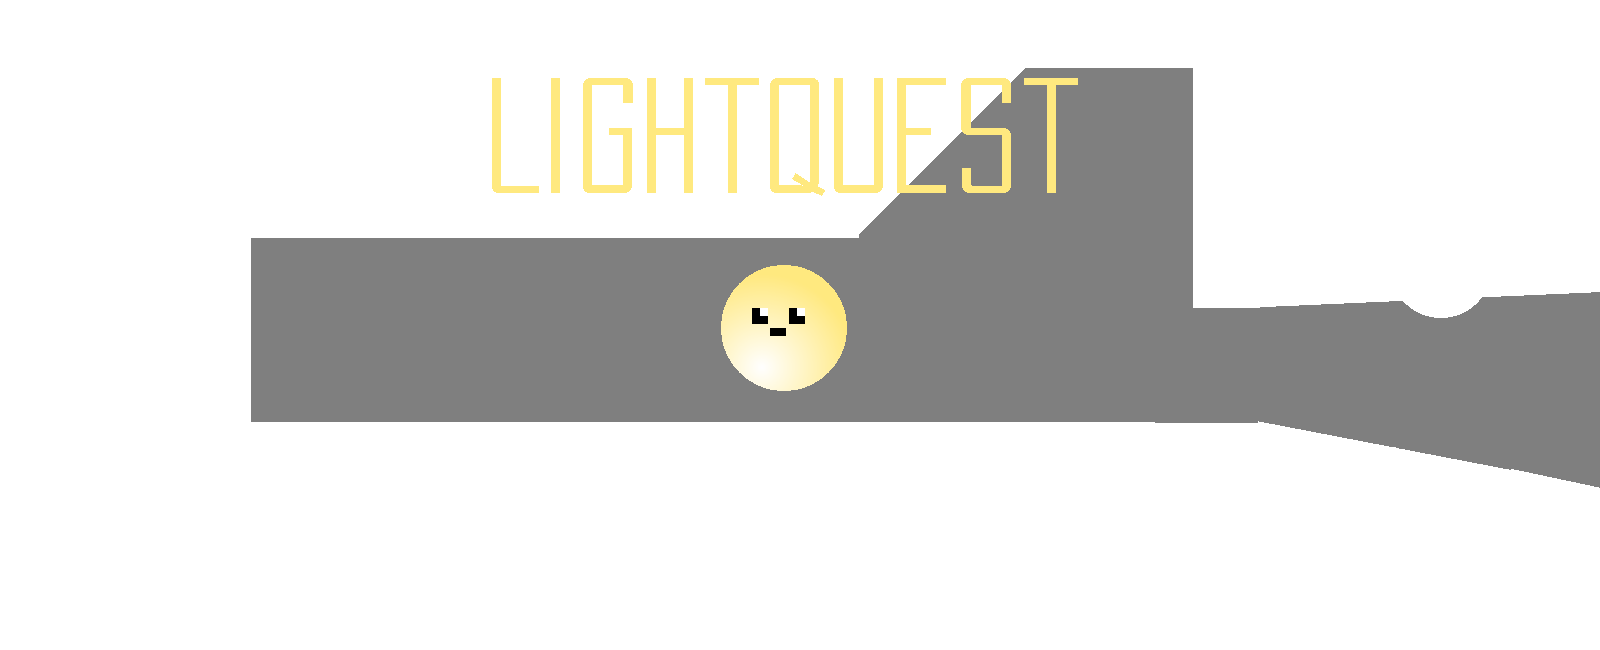 LightQuest